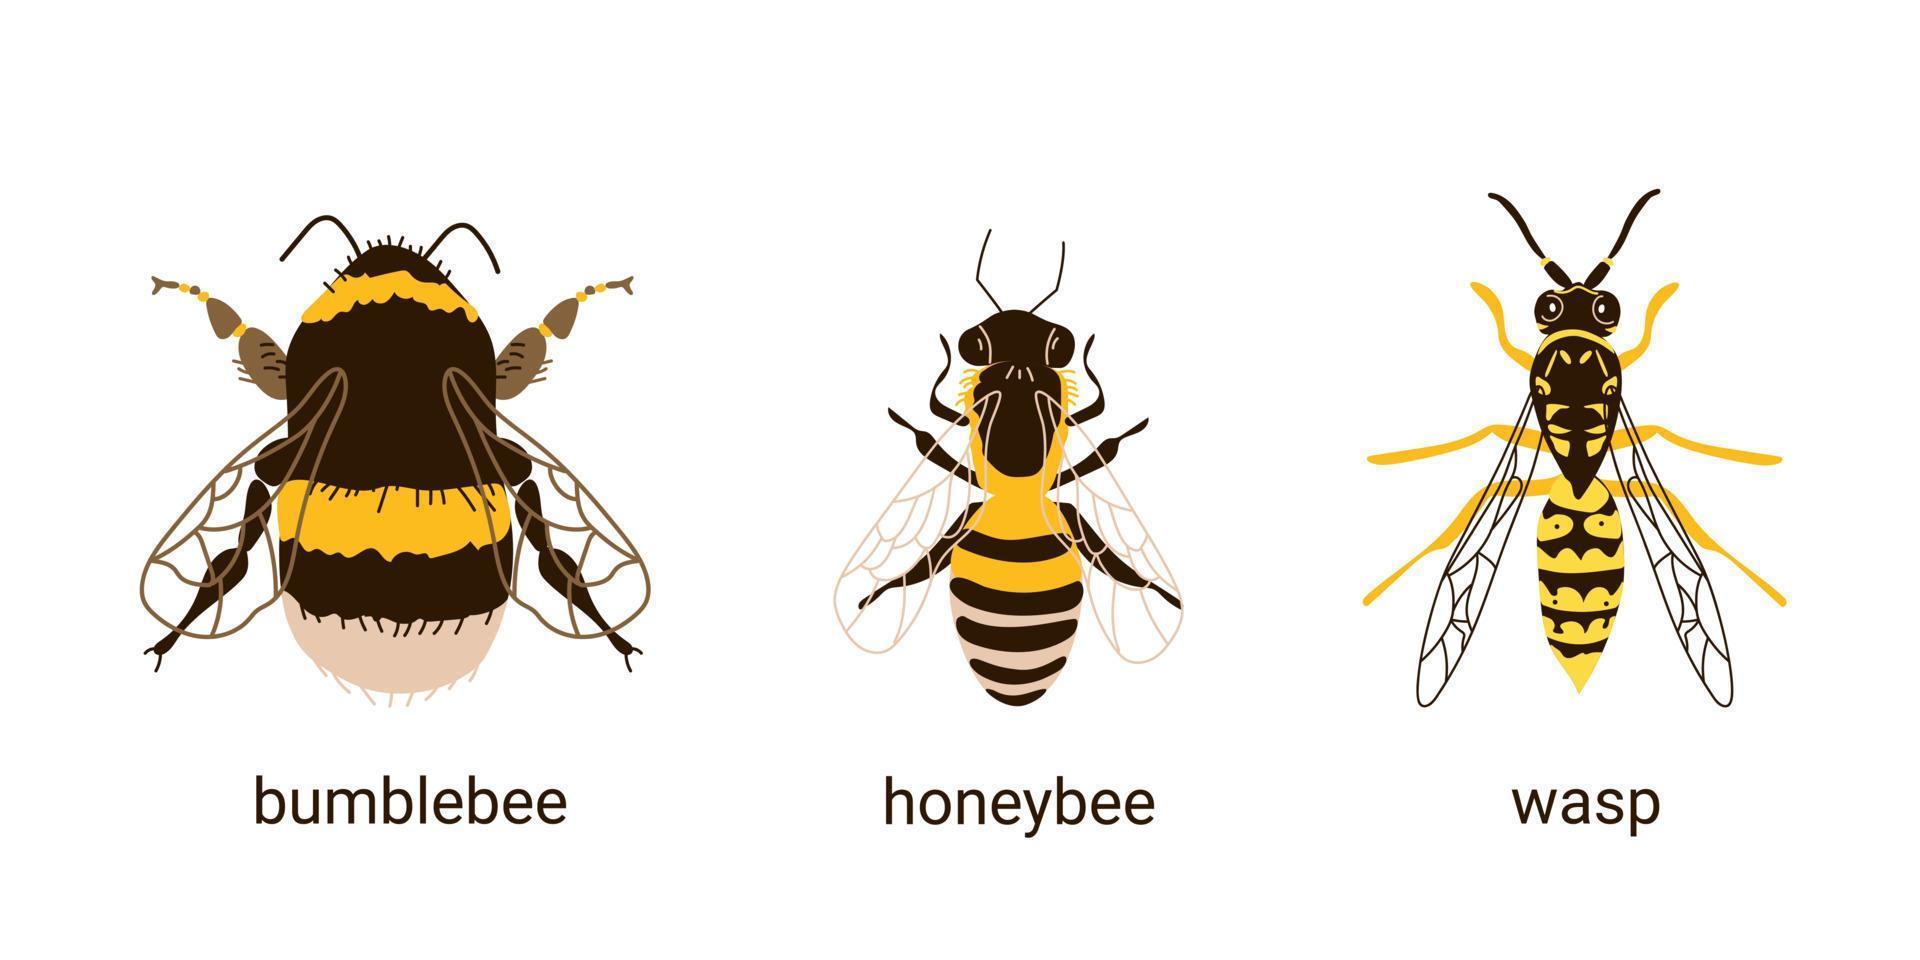 vergelijking van drie insecten bij, wesp en hommel vector